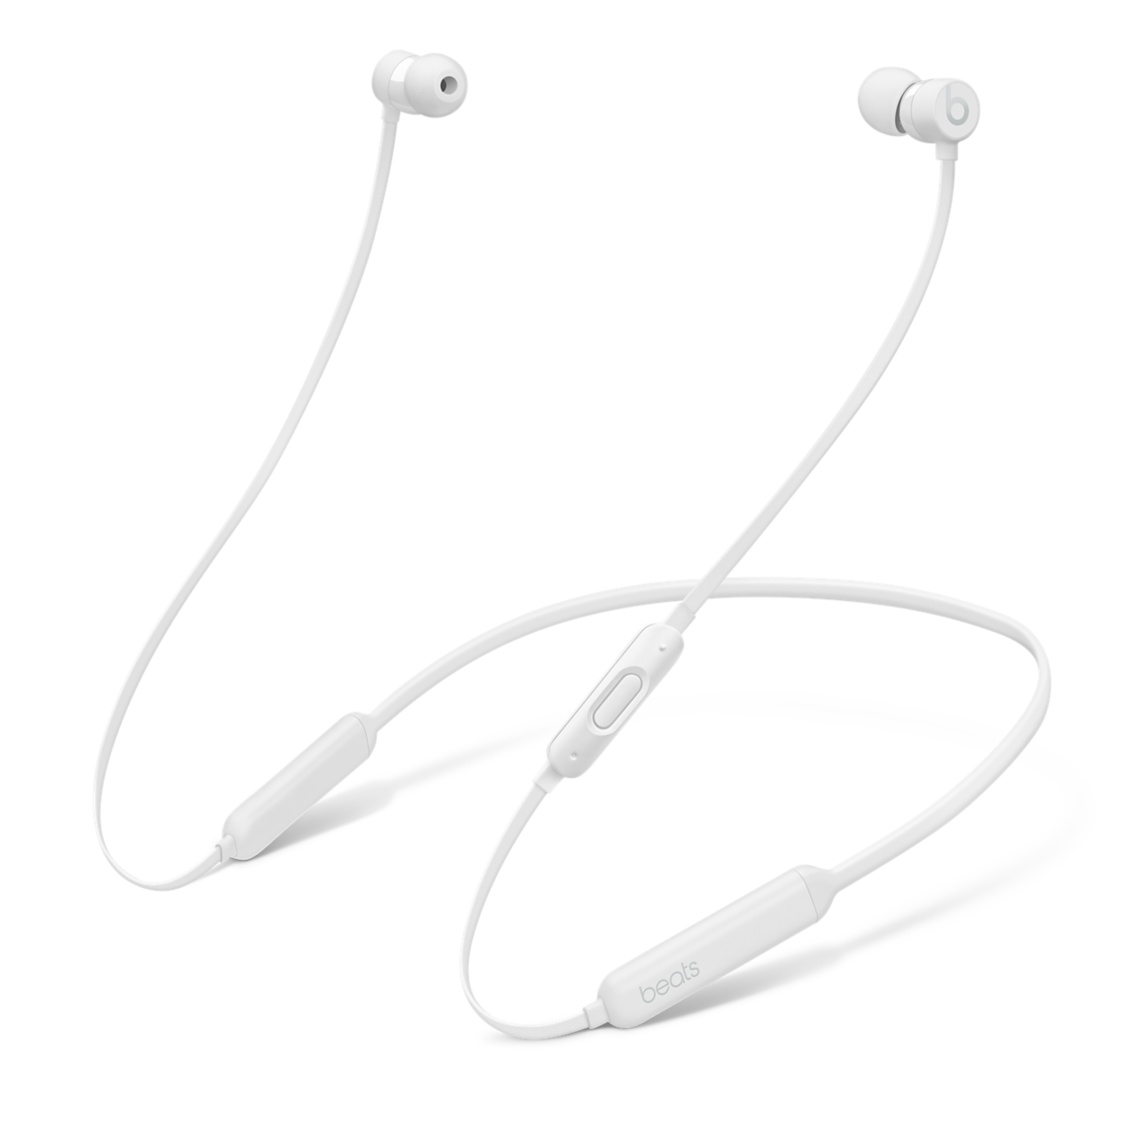 Apple、ワイヤレスイヤホン「BeatsX」を販売開始。価格は14,800円